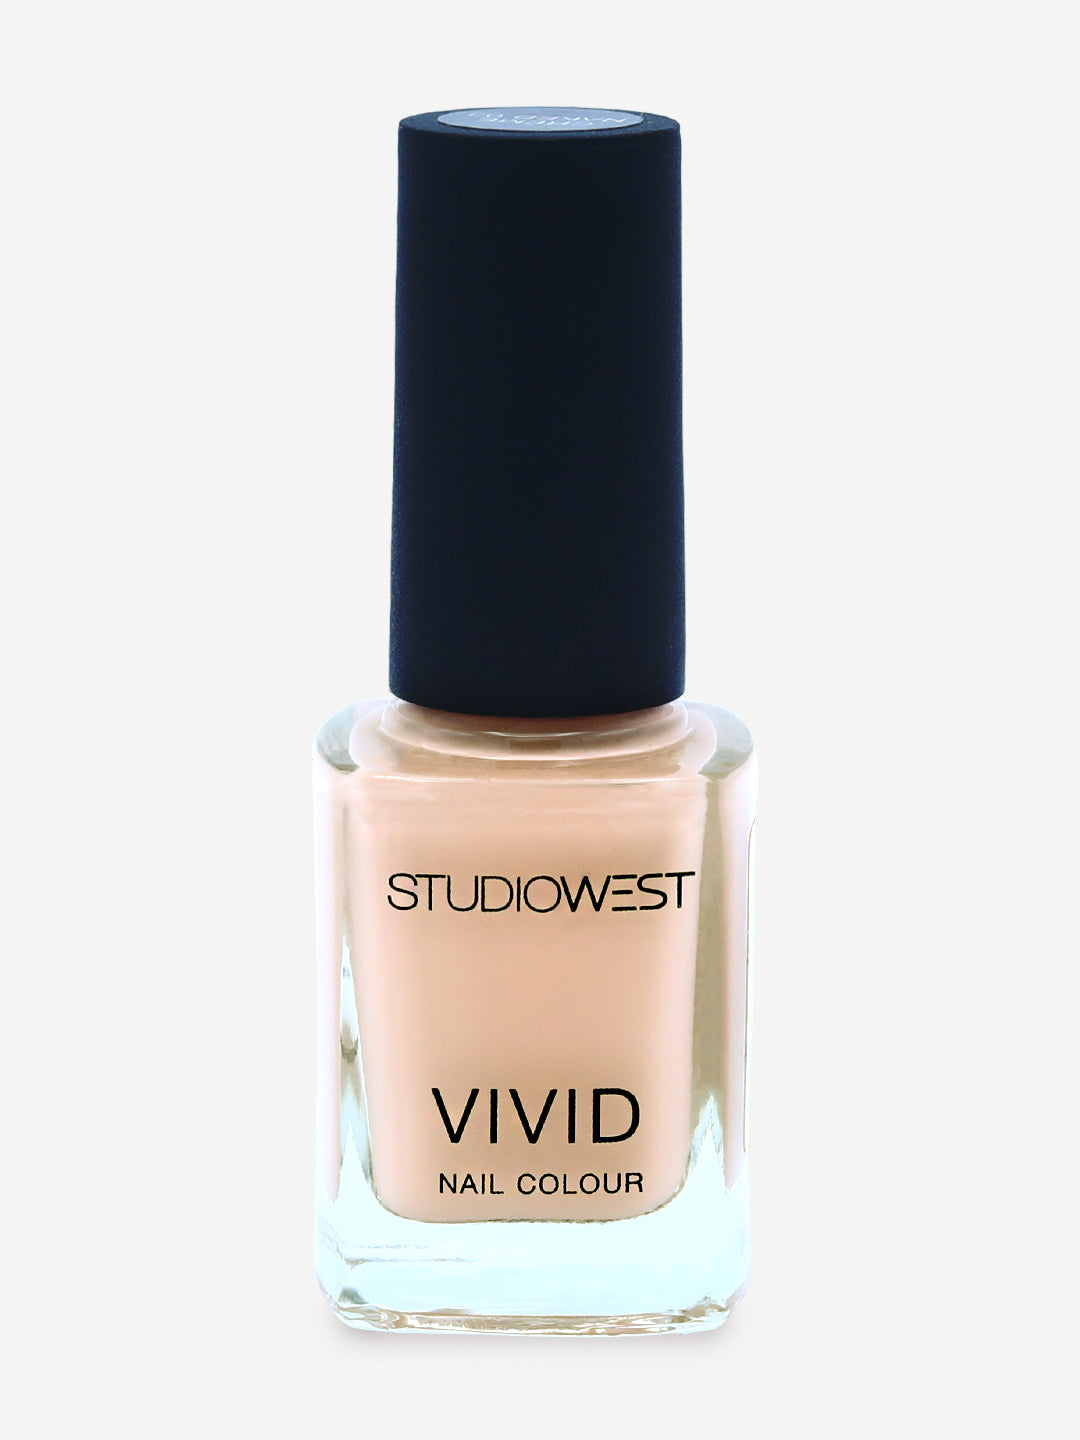 Studiowest Vivid Creme Nail Colour, Naked 06, 9 ml